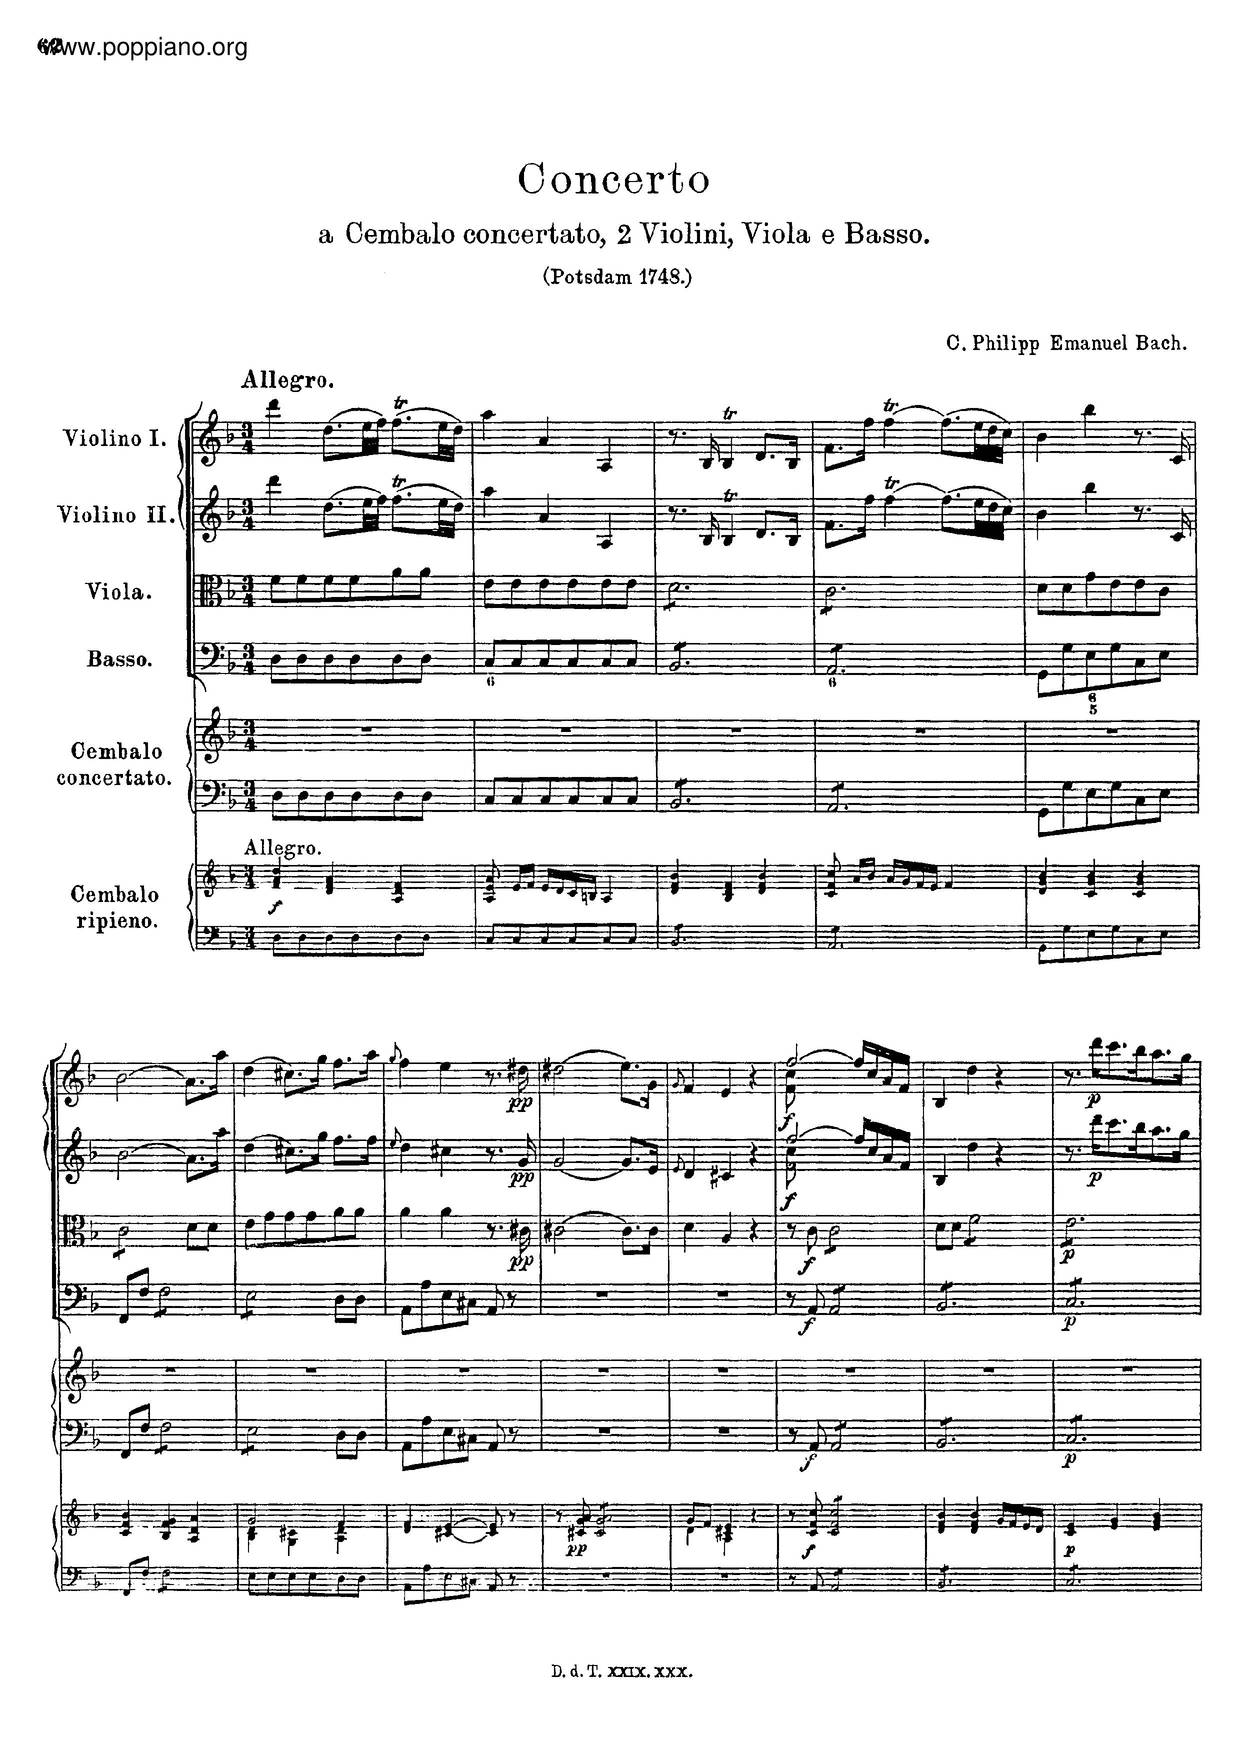 Harpsichord Concerto In D Minor, H.427 Score